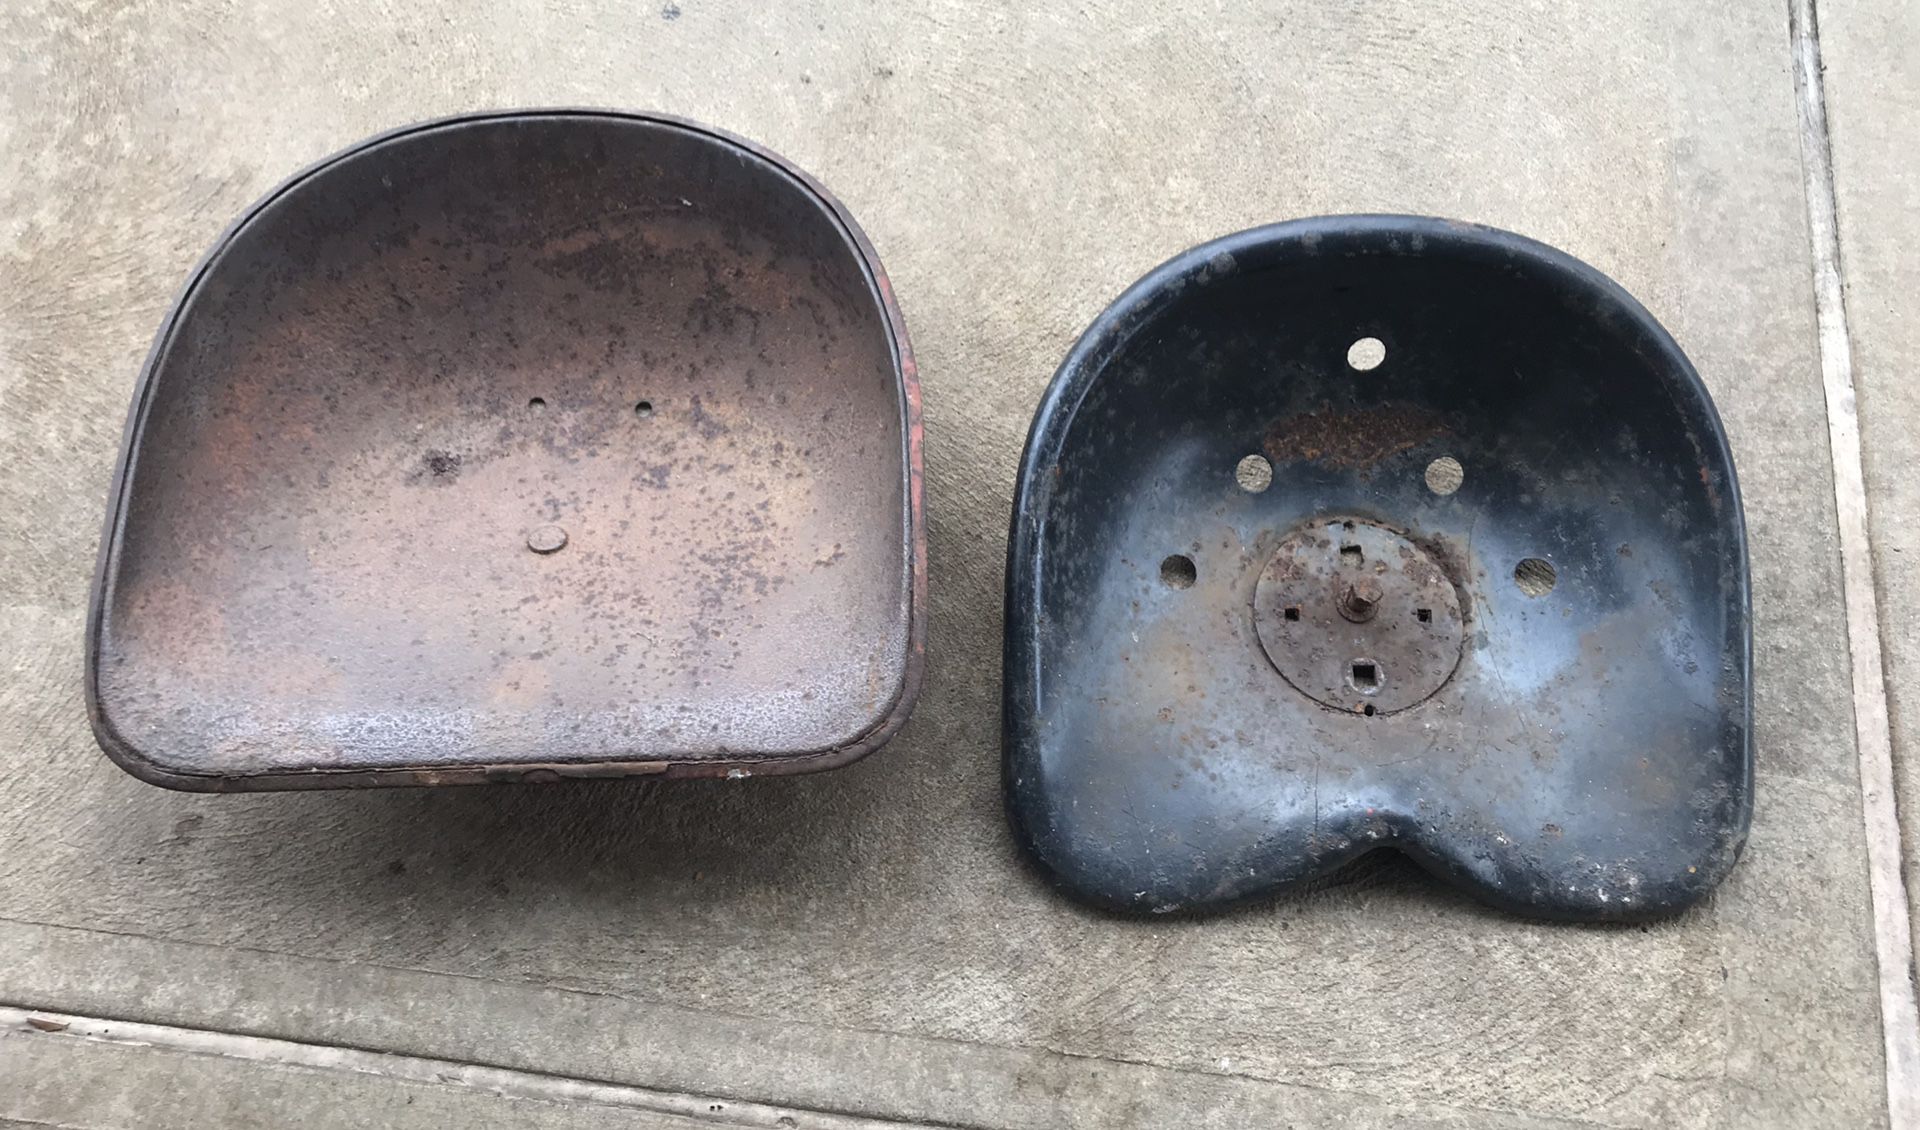 Metal tractor seats